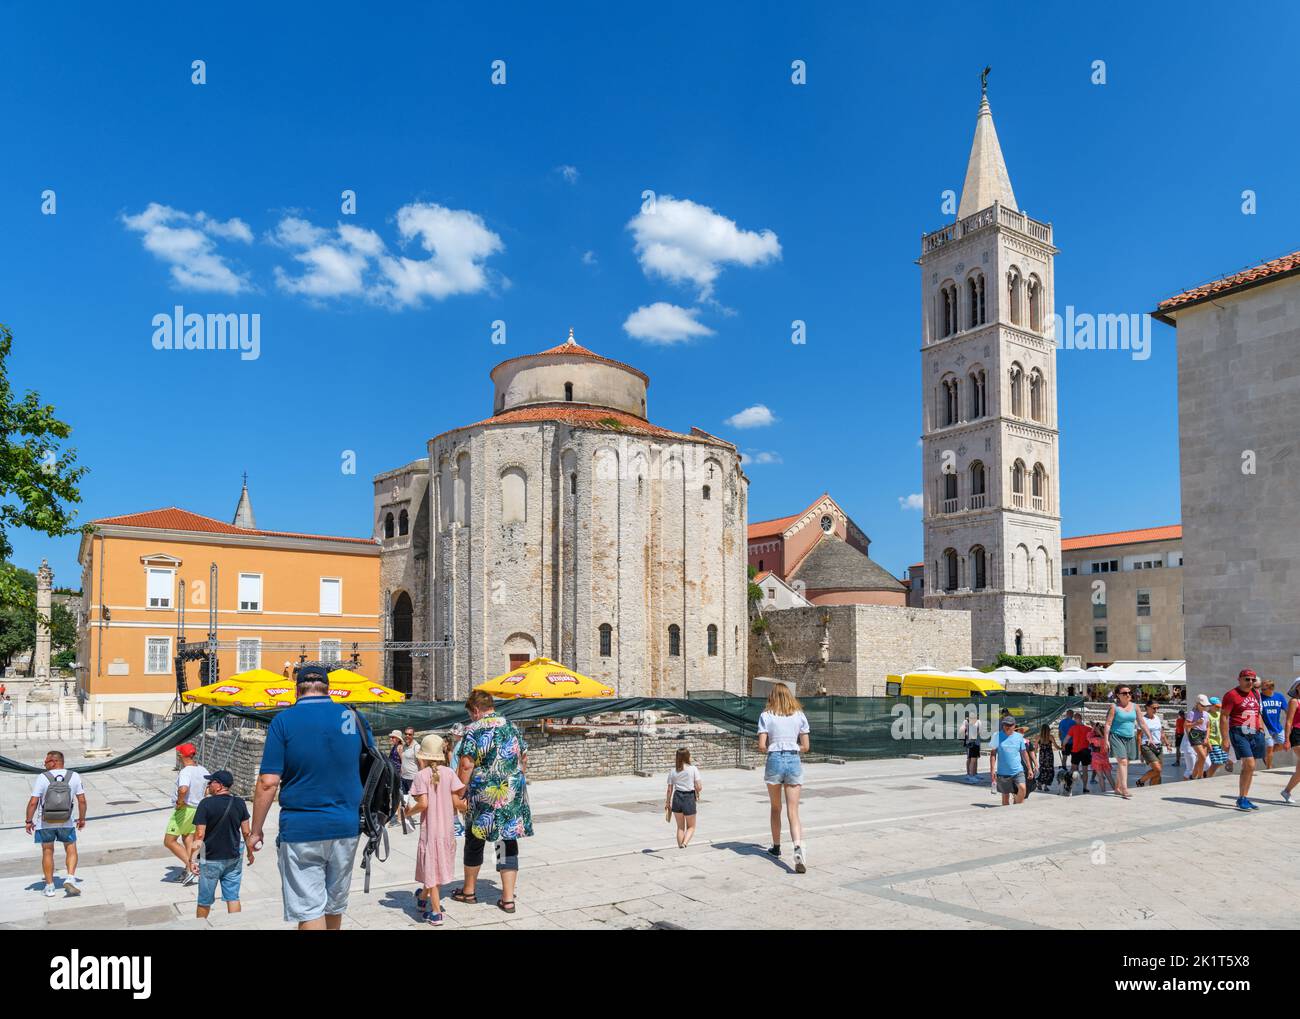 El Foro Romano, la Catedral de Santa Anastasia y la Iglesia de San Donato en el centro histórico, Zadar, Croacia Foto de stock